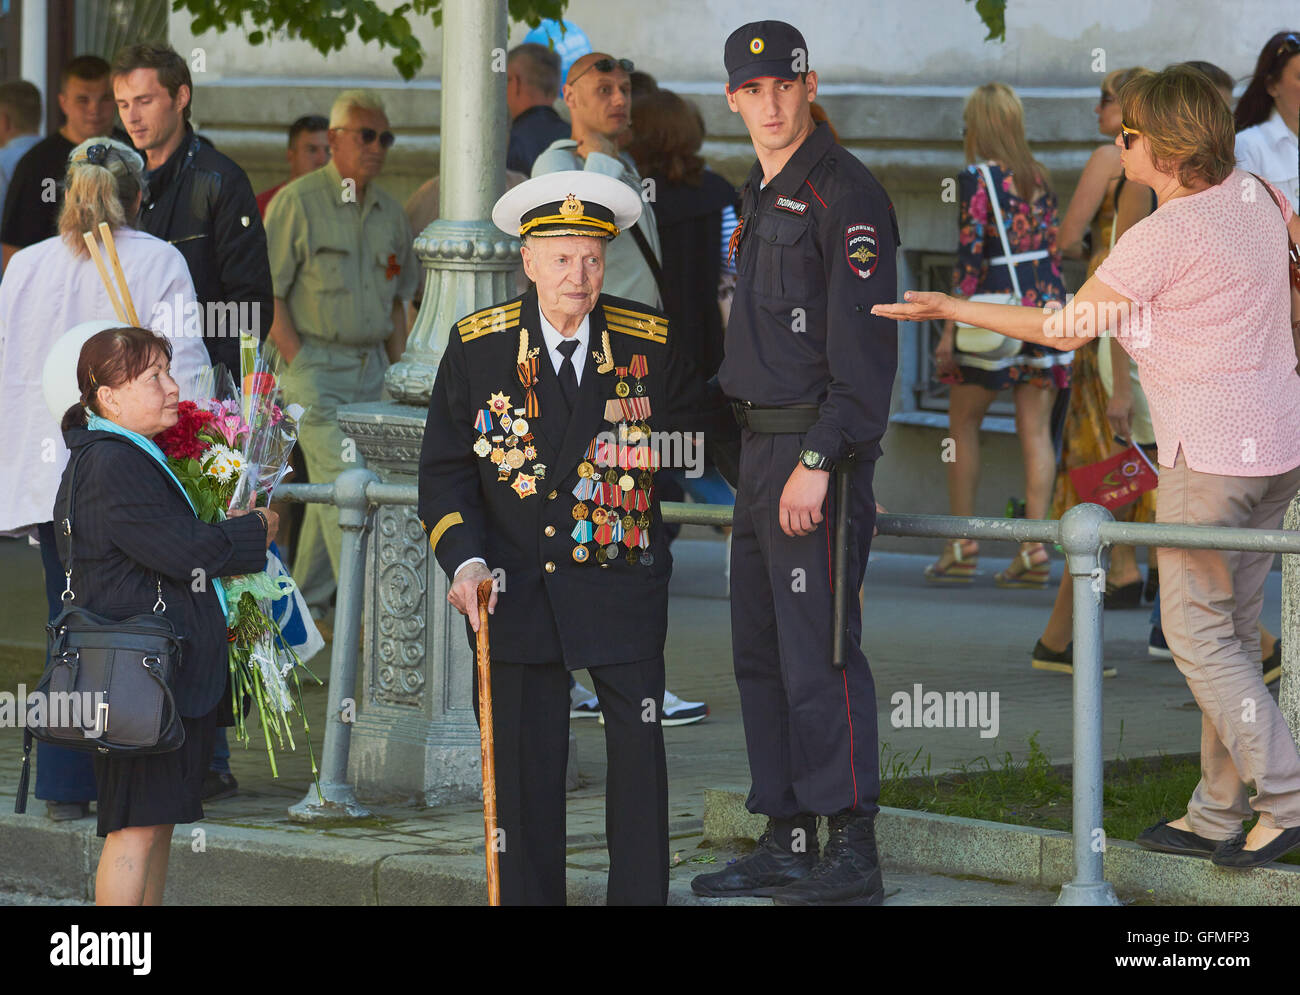 Ältere Marineoffizier anzeigen Medaillen auf seiner Uniform am 9. Mai Siegesparade Sewastopol-Krim Stockfoto